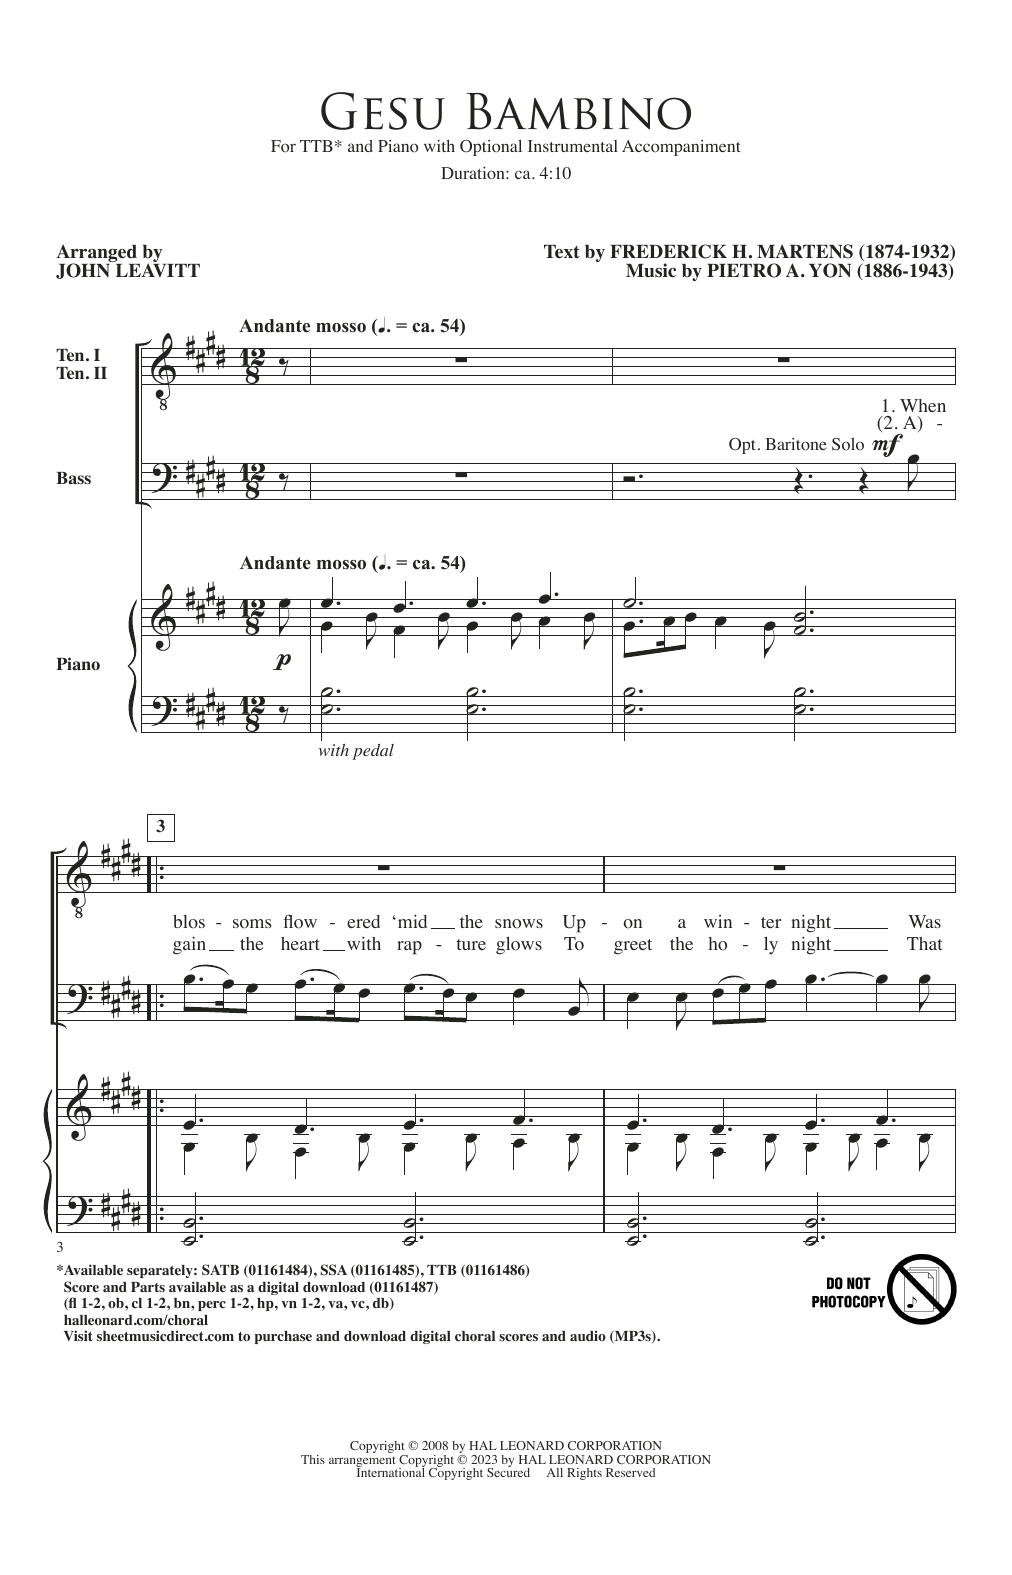 Pietro A. Yon Gesú Bambino (arr. John Leavitt) Sheet Music Notes & Chords for SATB Choir - Download or Print PDF